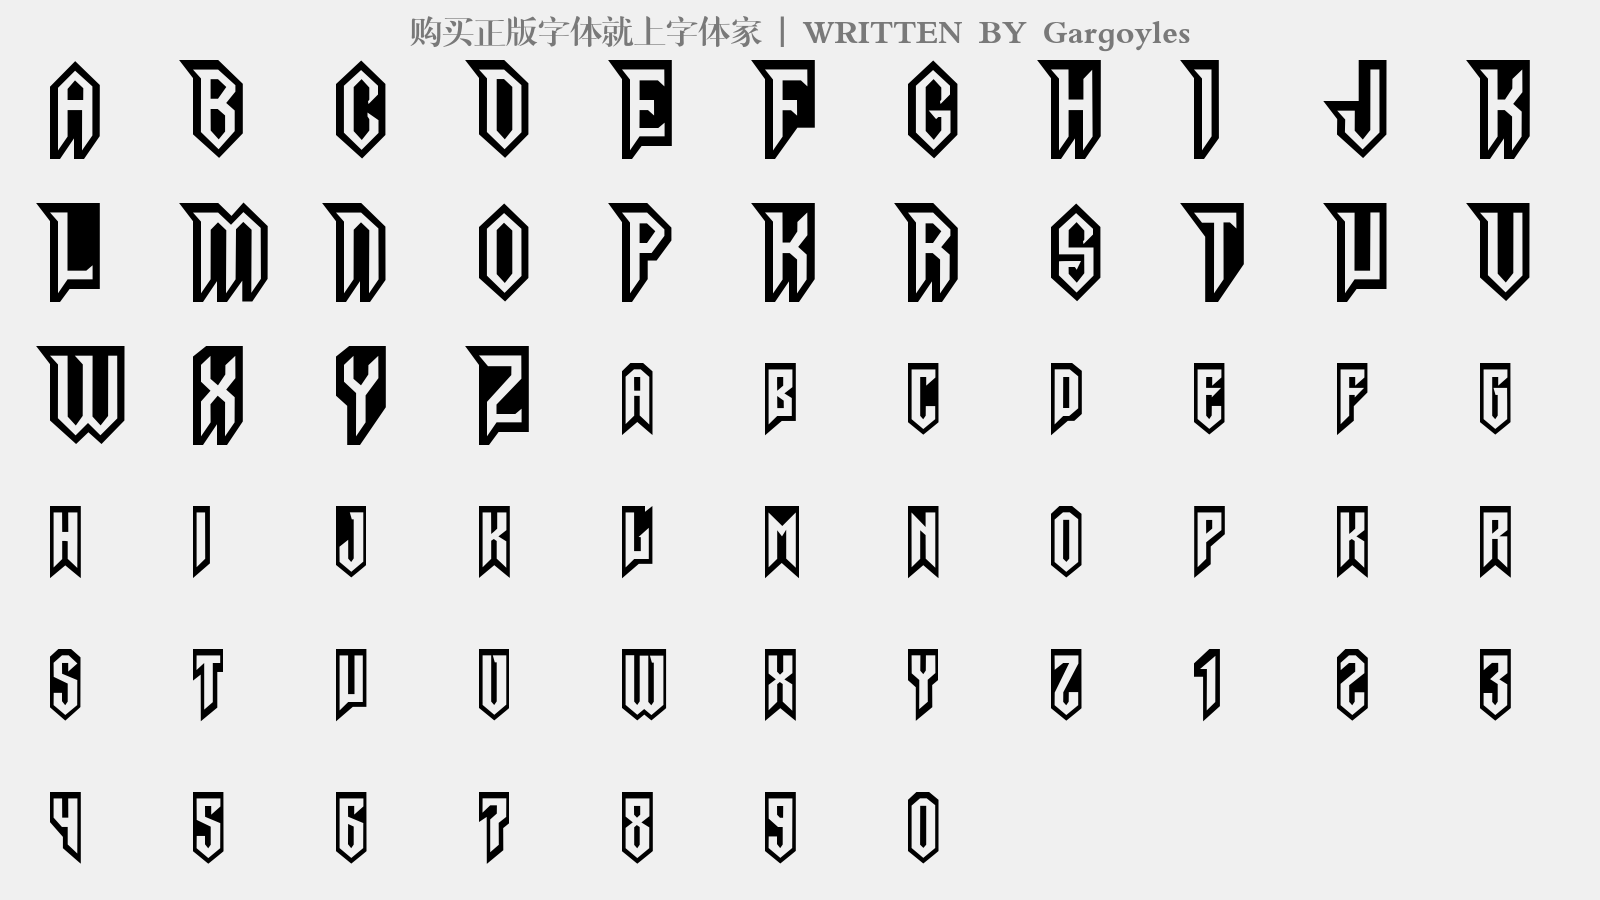 Gargoyles - 大写字母/小写字母/数字